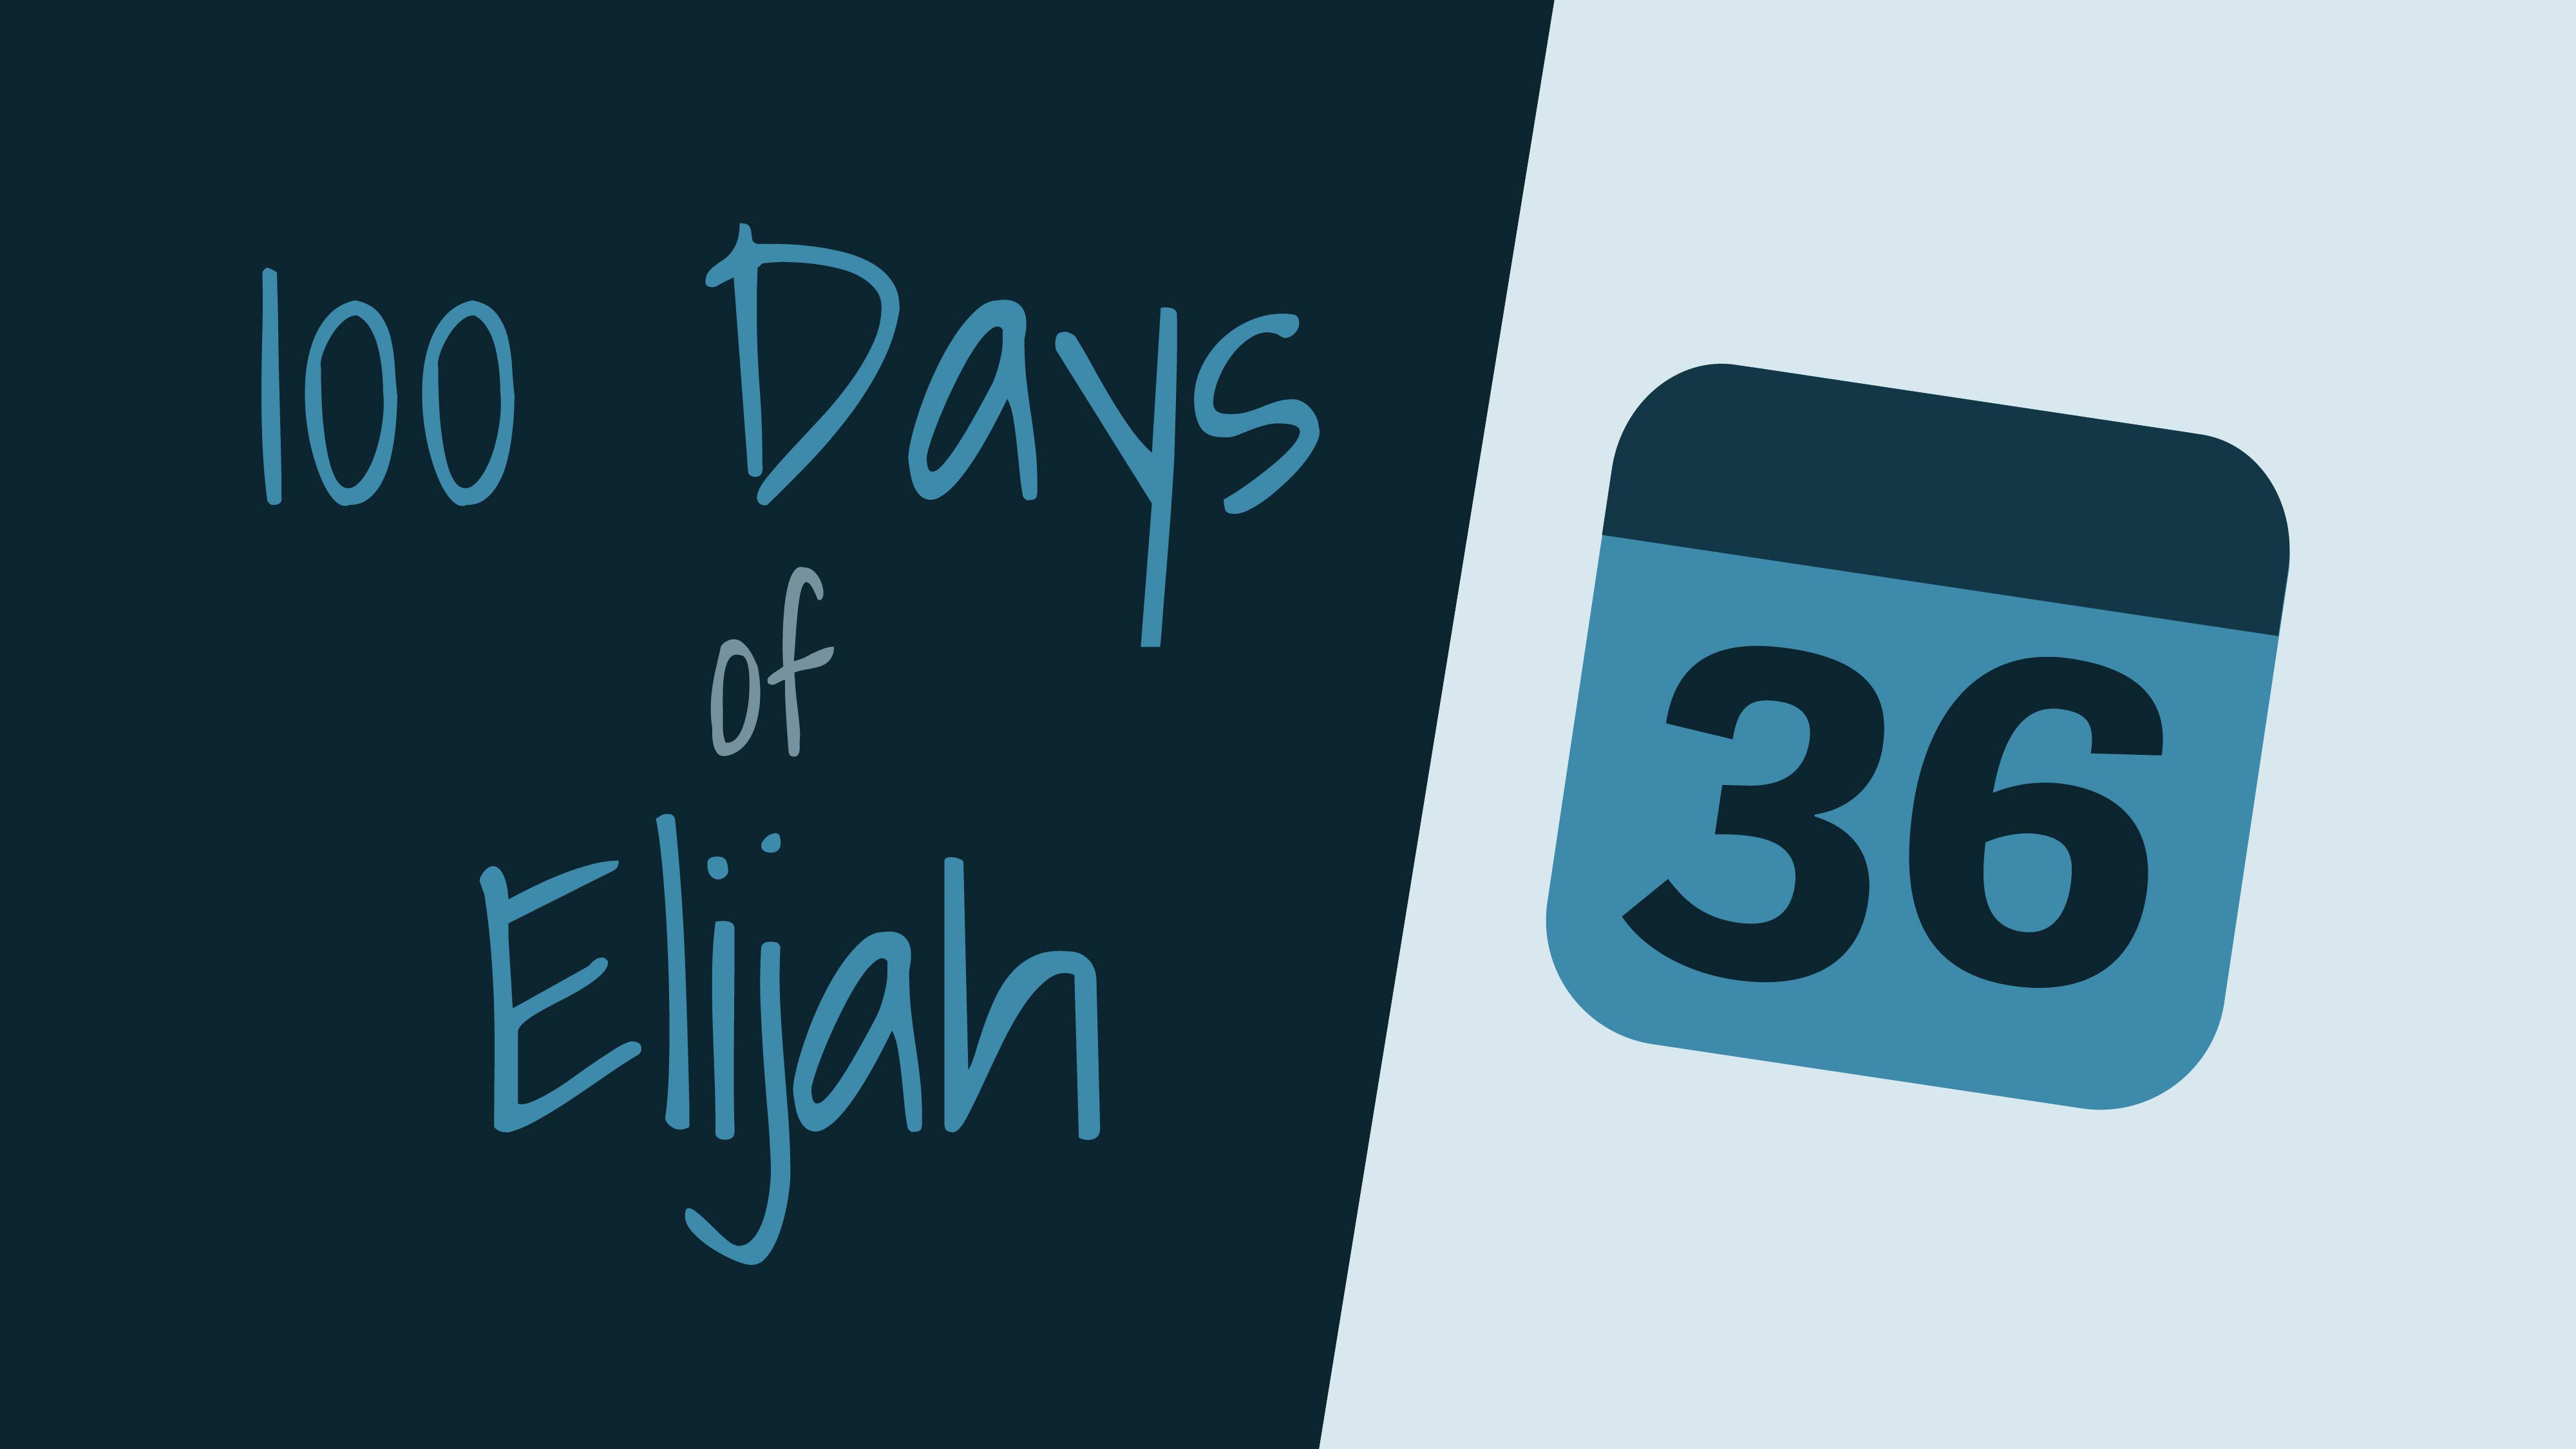 100 Days of Elijah: Day 36